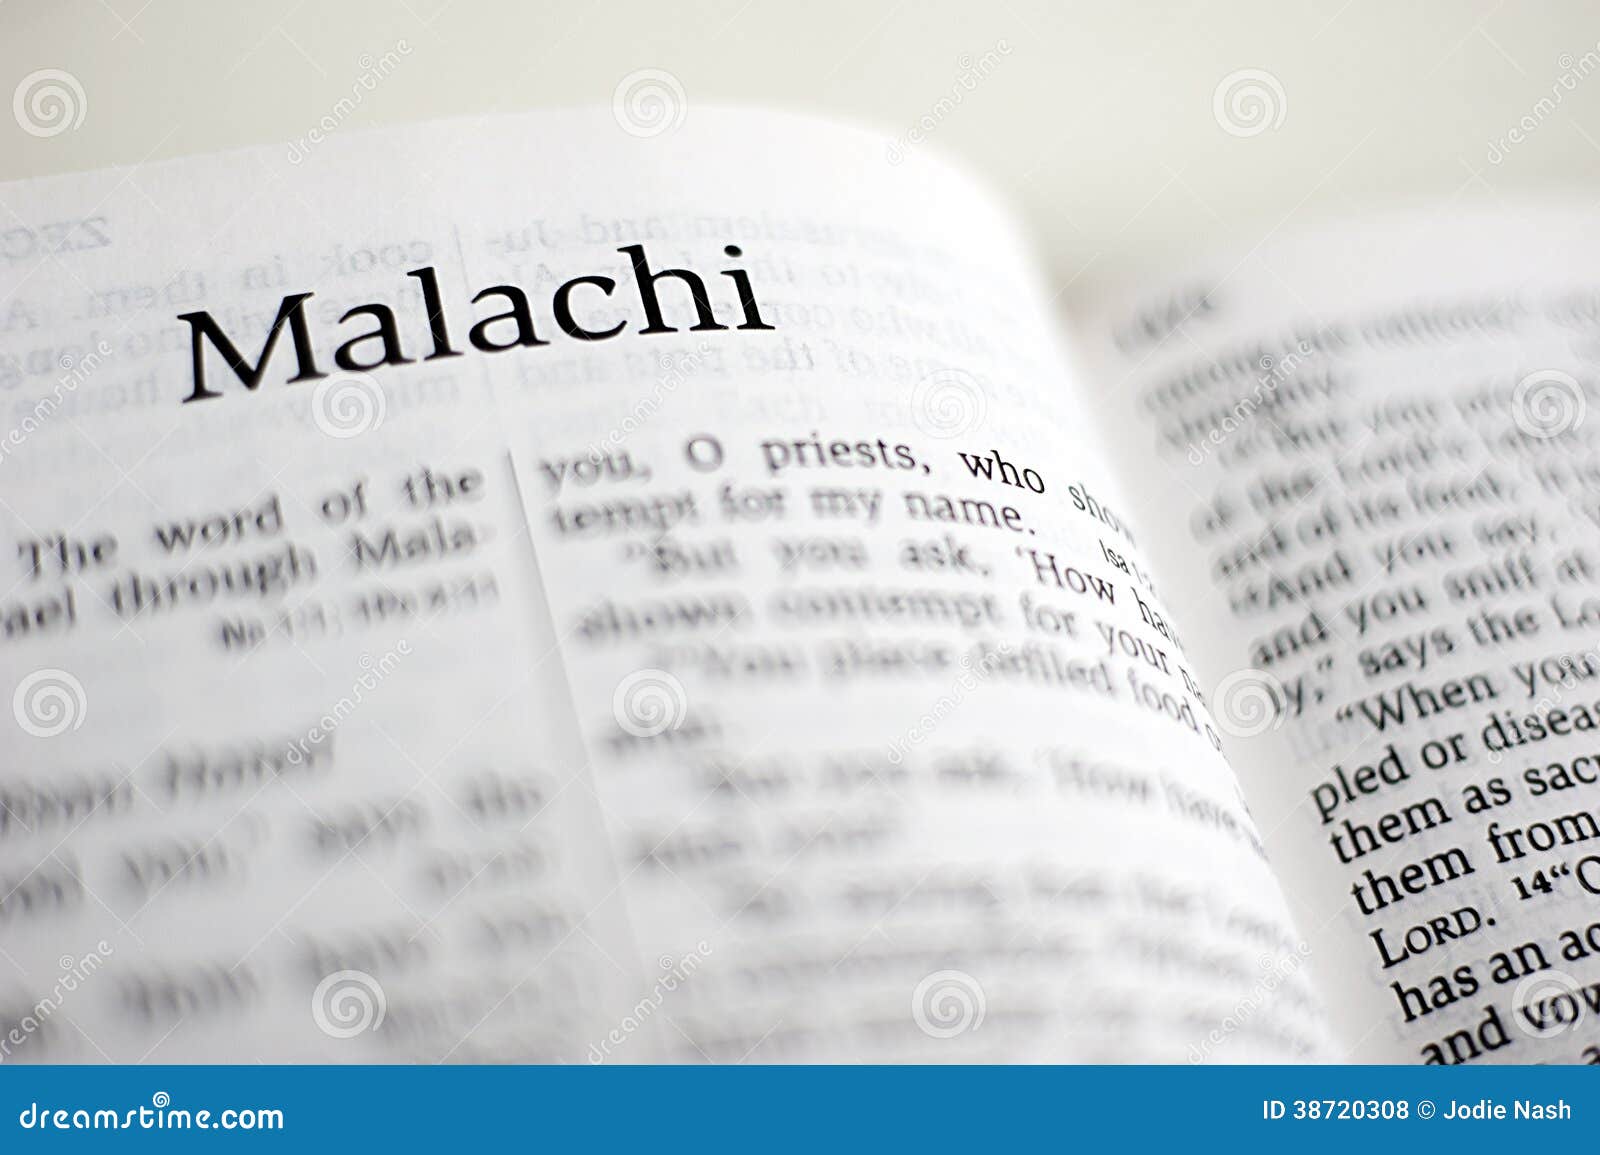 The book of malachi